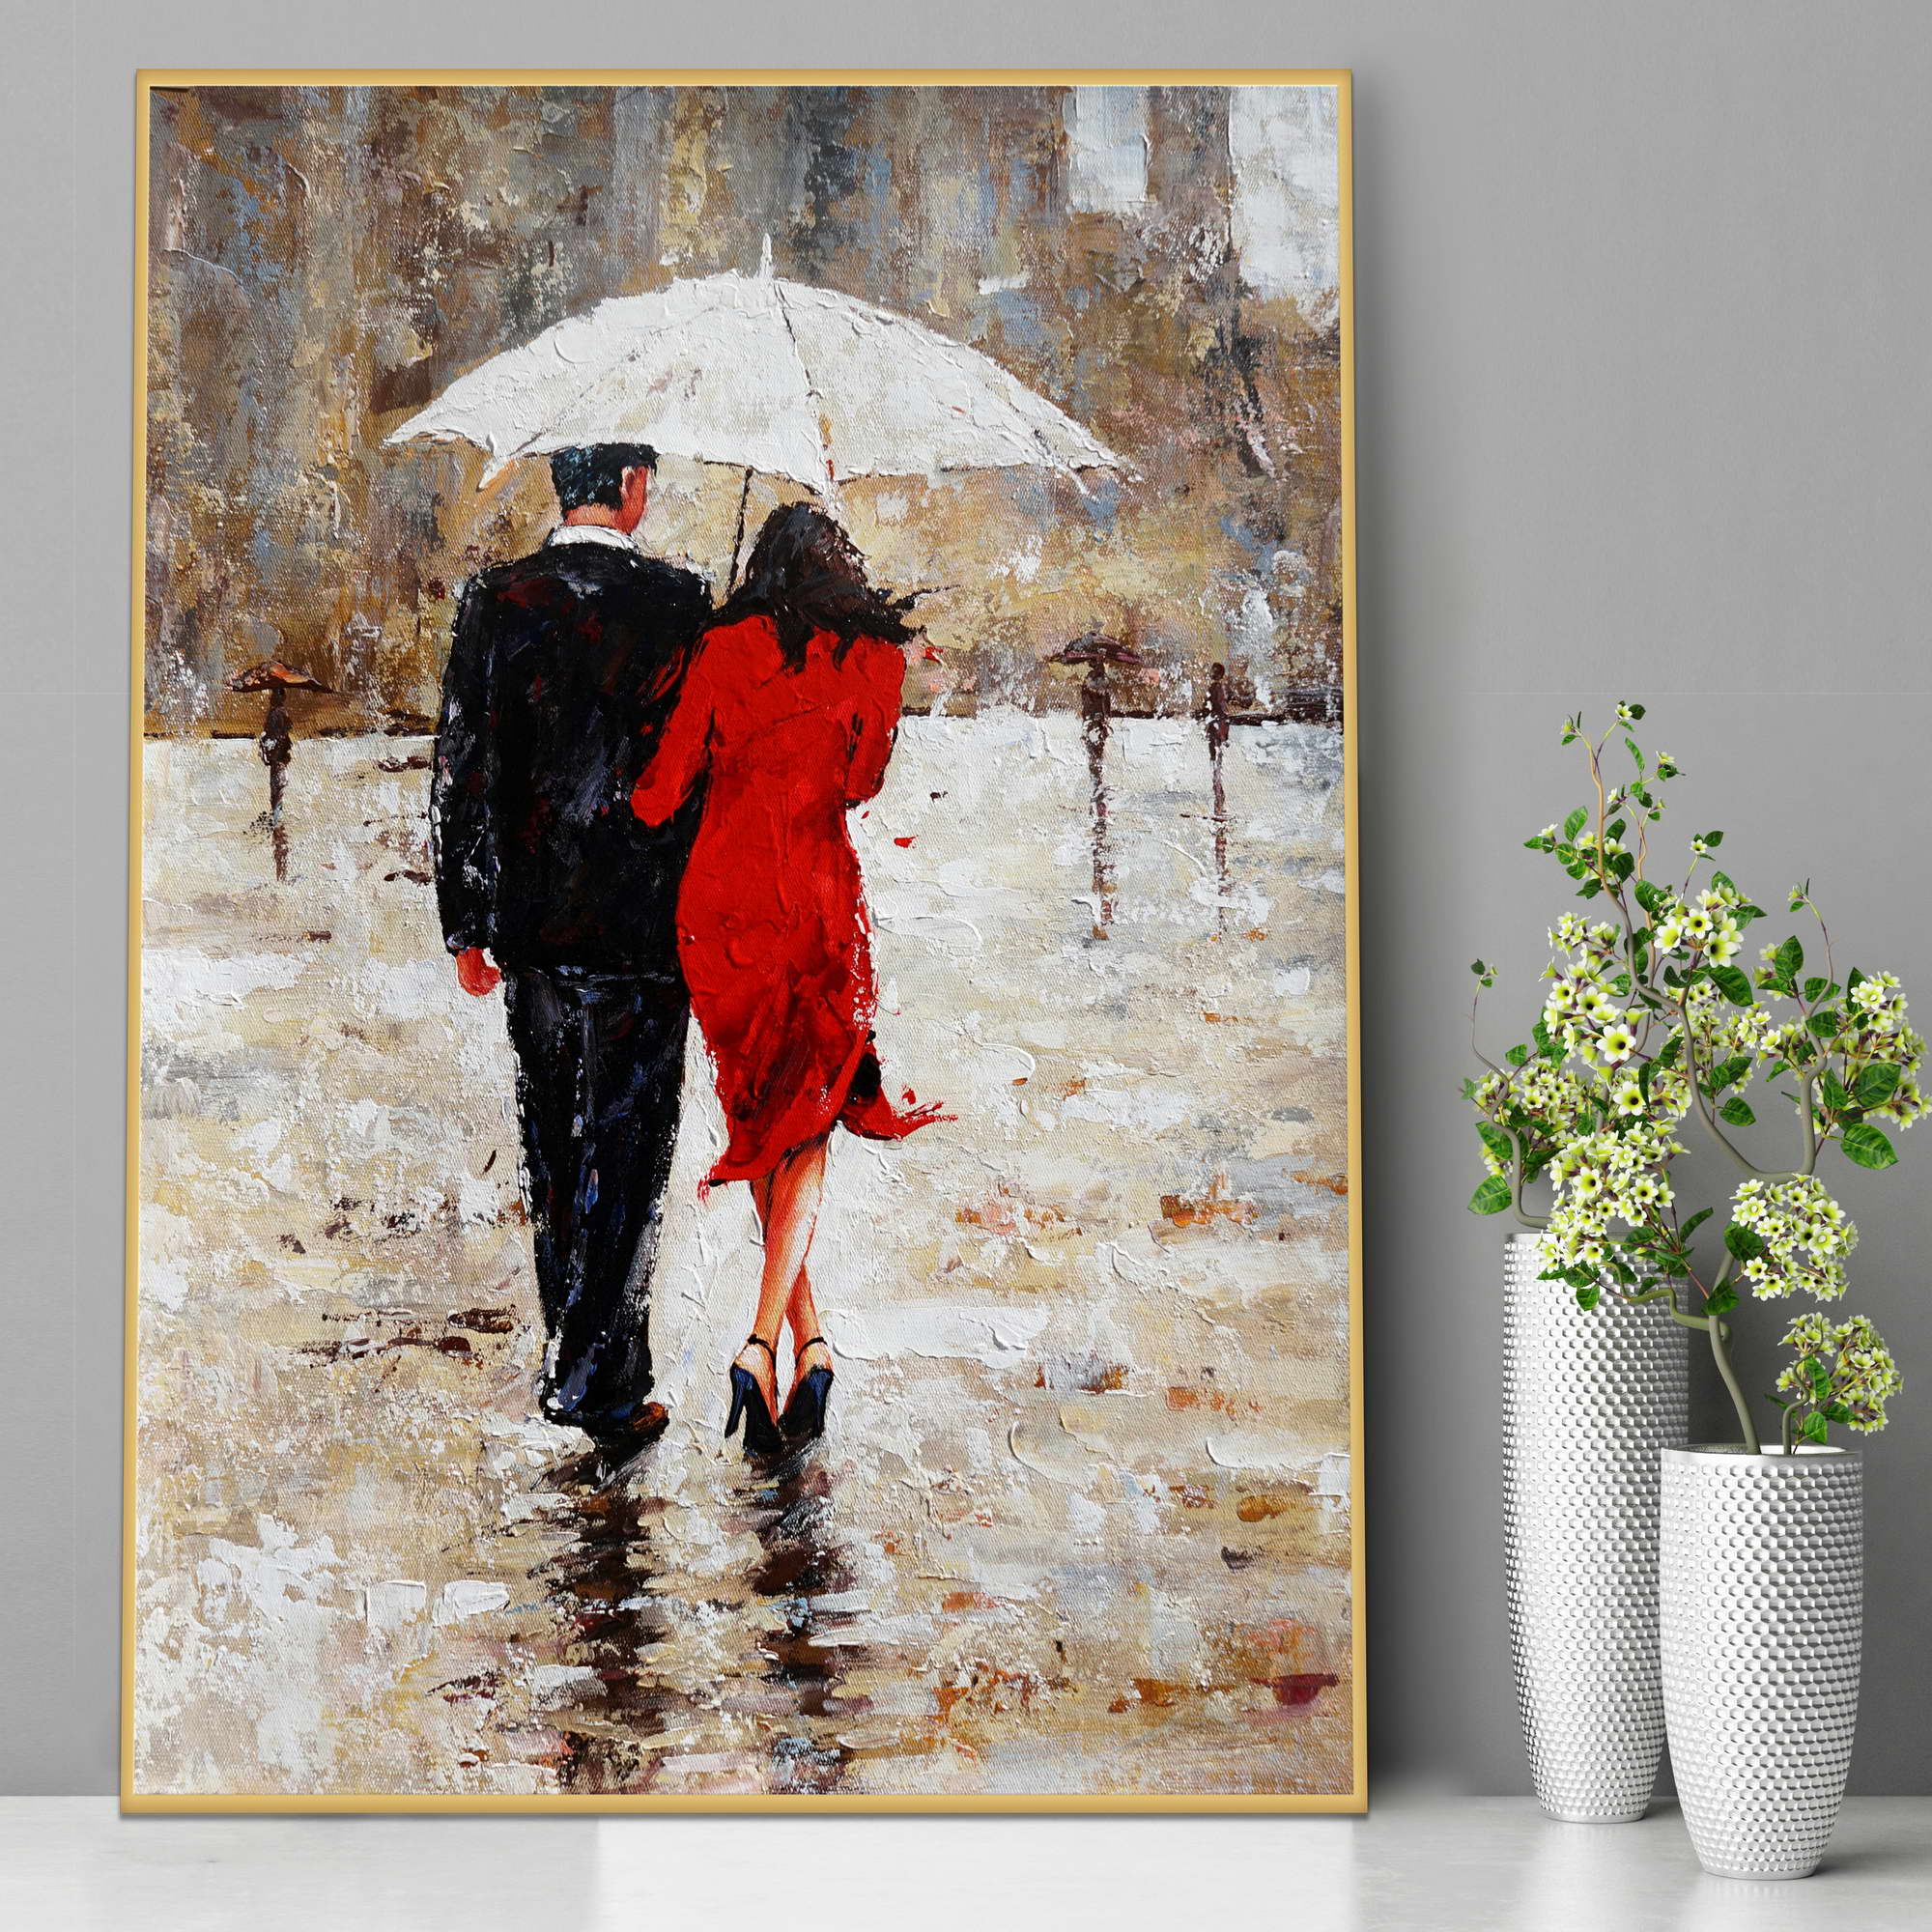 Dipinto di una coppia che si ripara dalla pioggia con un ombrello bianco, con la donna che indossa un abito rosso.